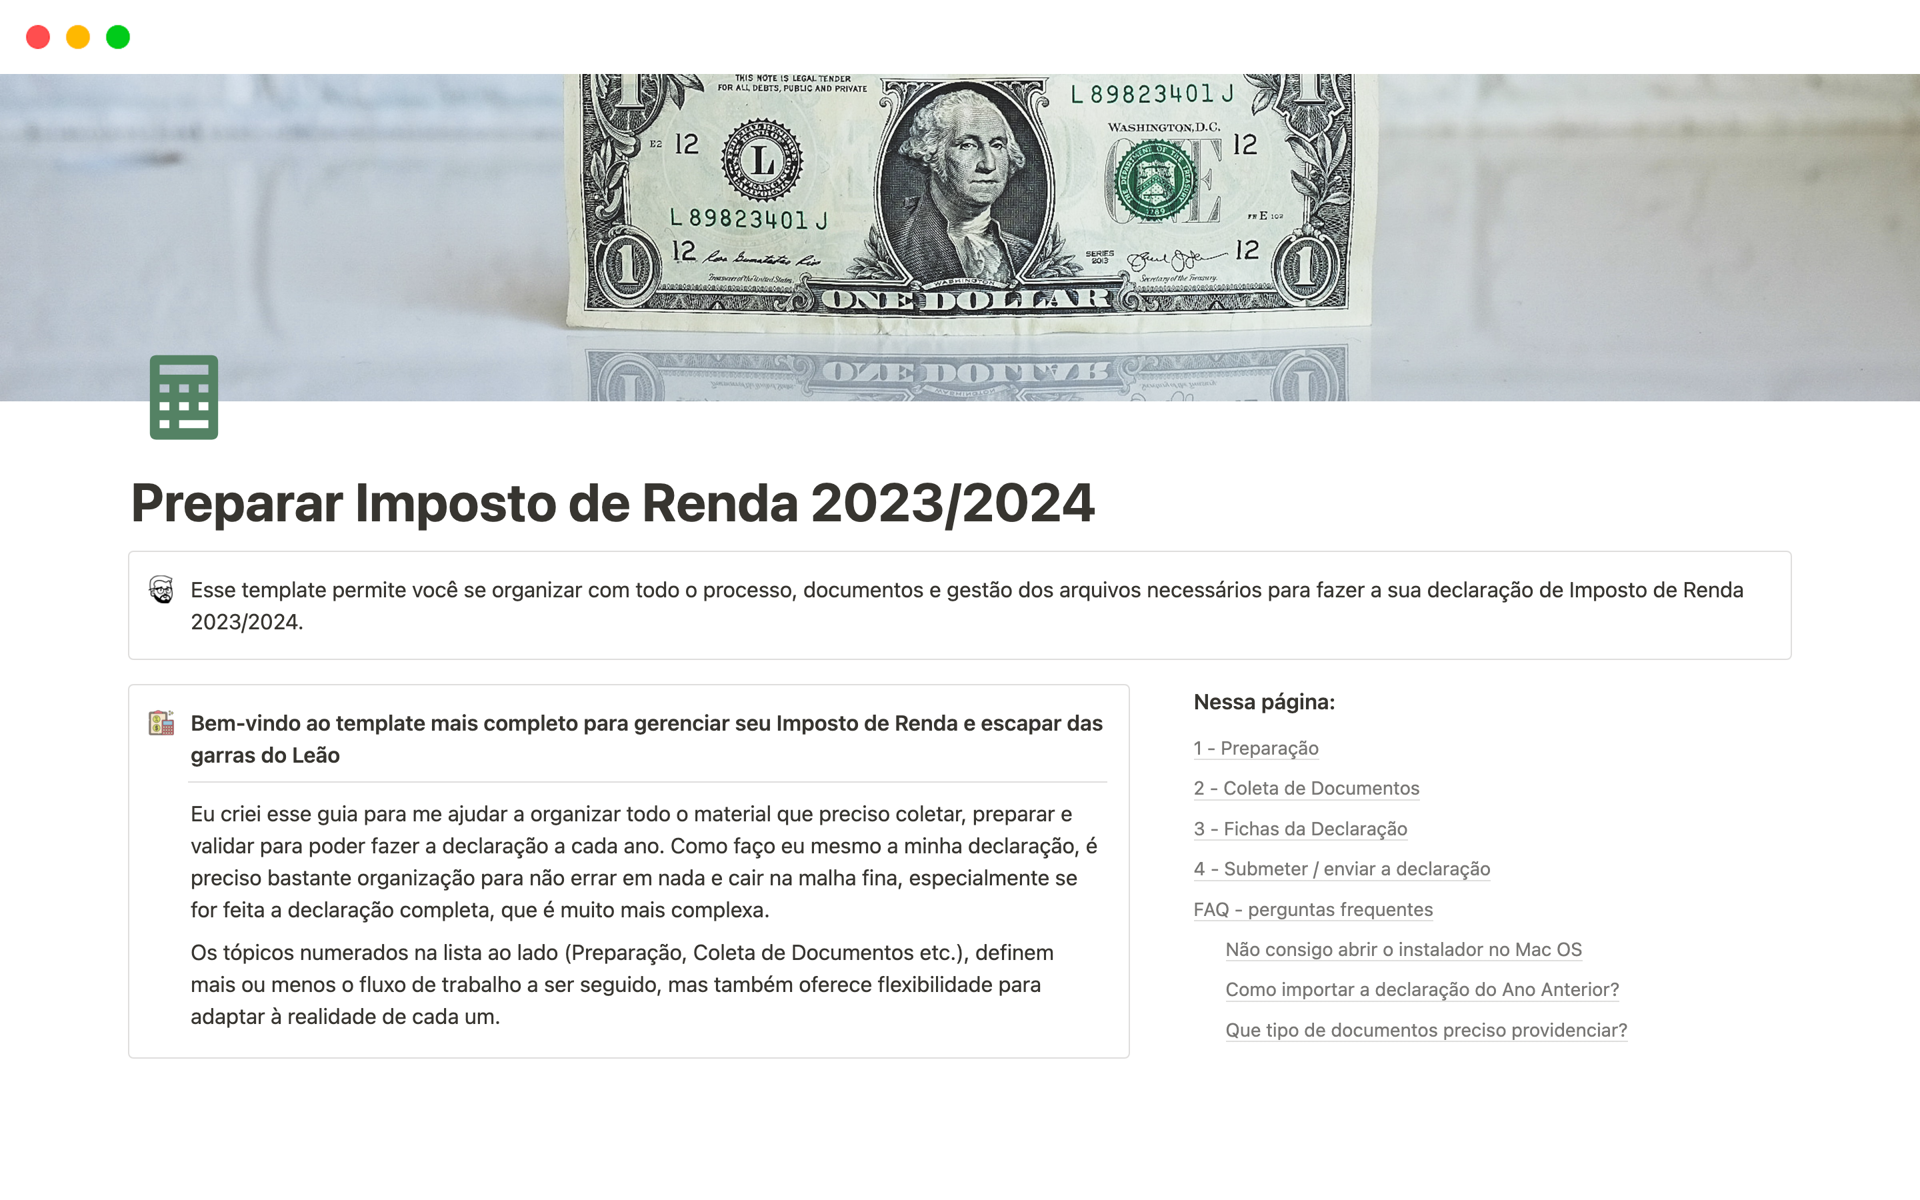 Eine Vorlagenvorschau für Preparar Imposto de Renda 2023/2024